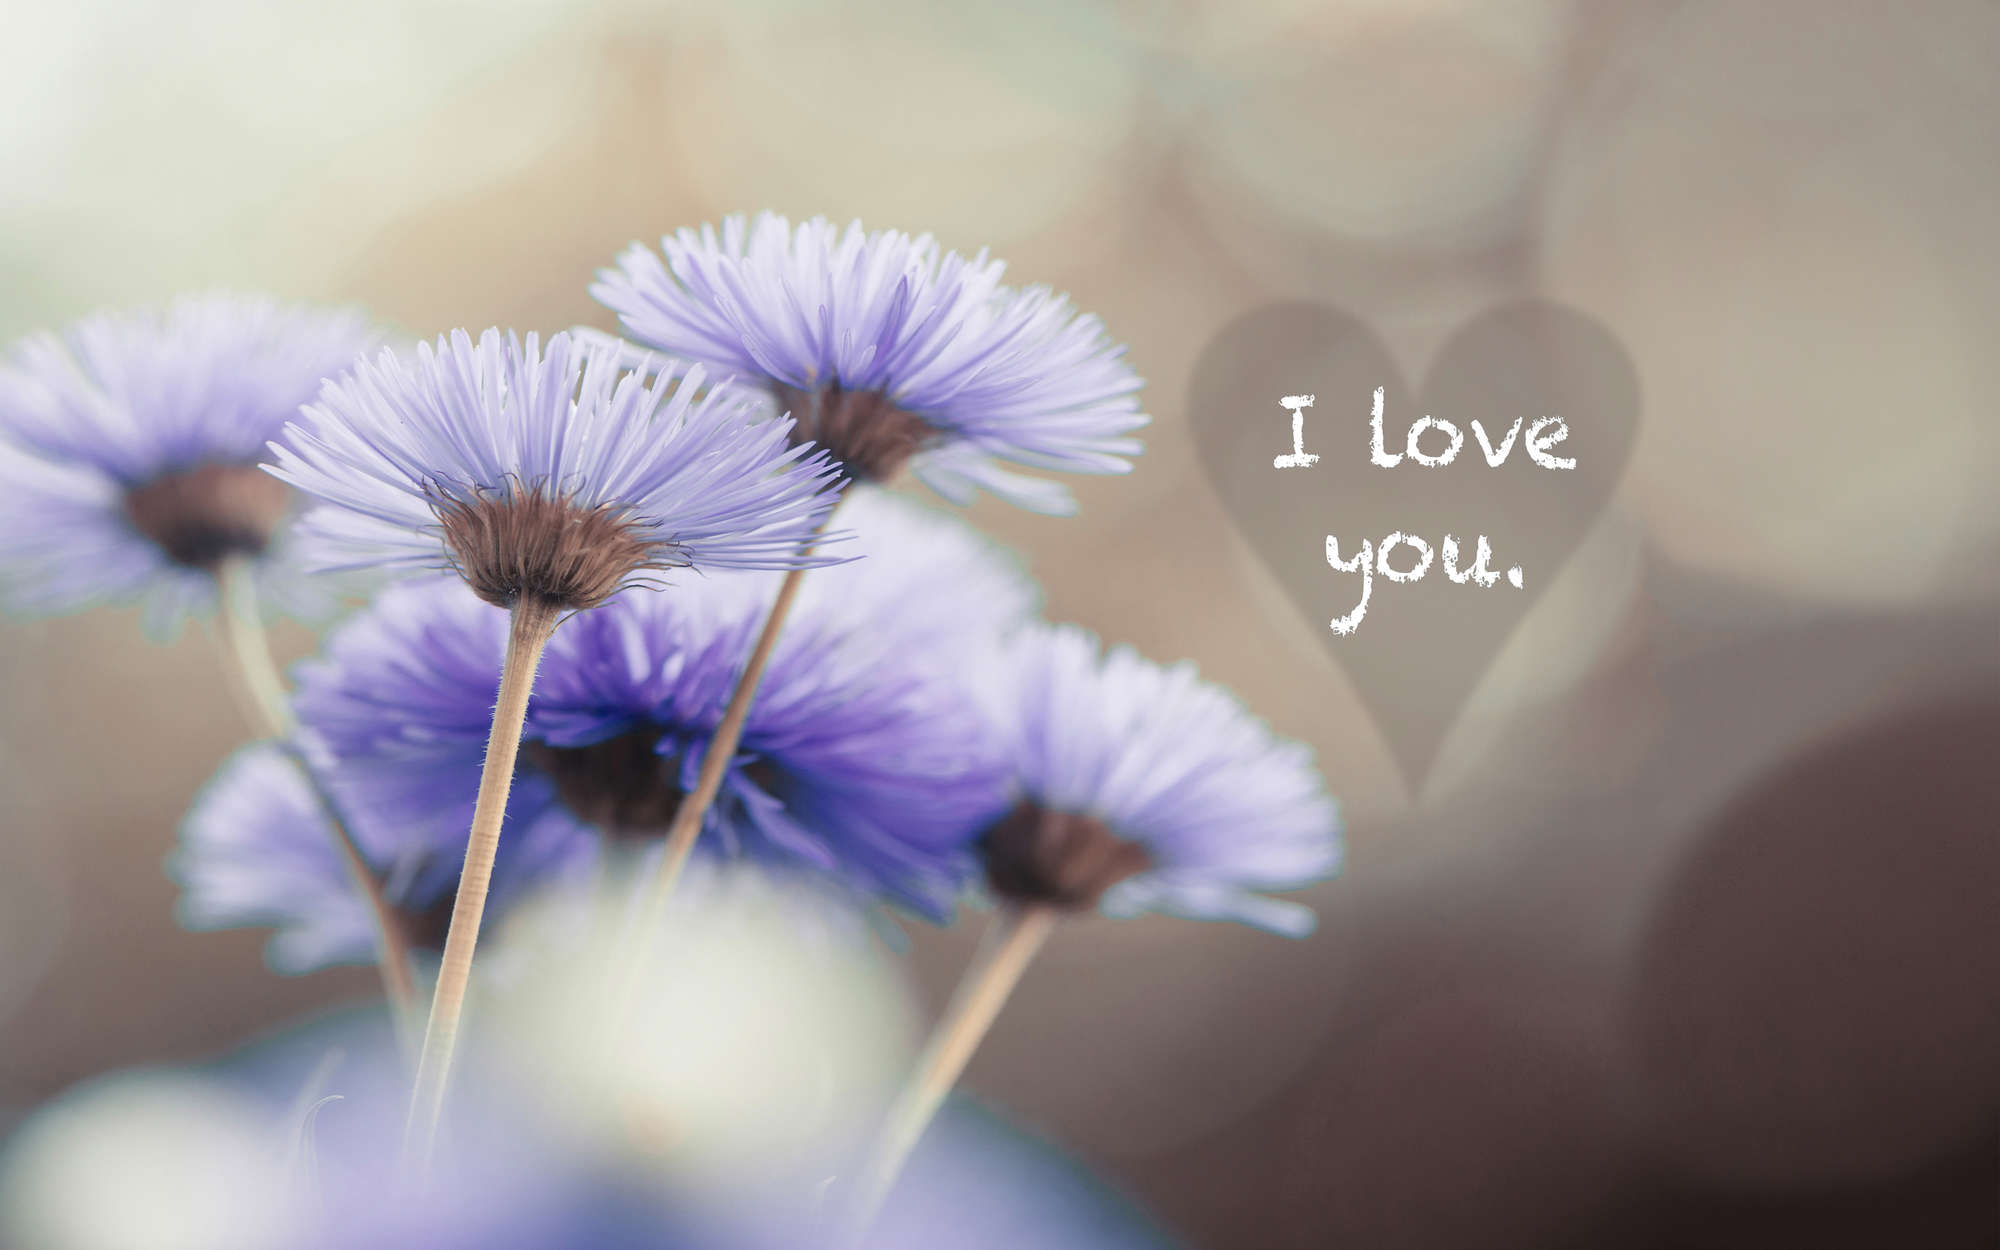             Fotomural flores en violeta con inscripción "I love you" - tejido no tejido liso de alta calidad
        